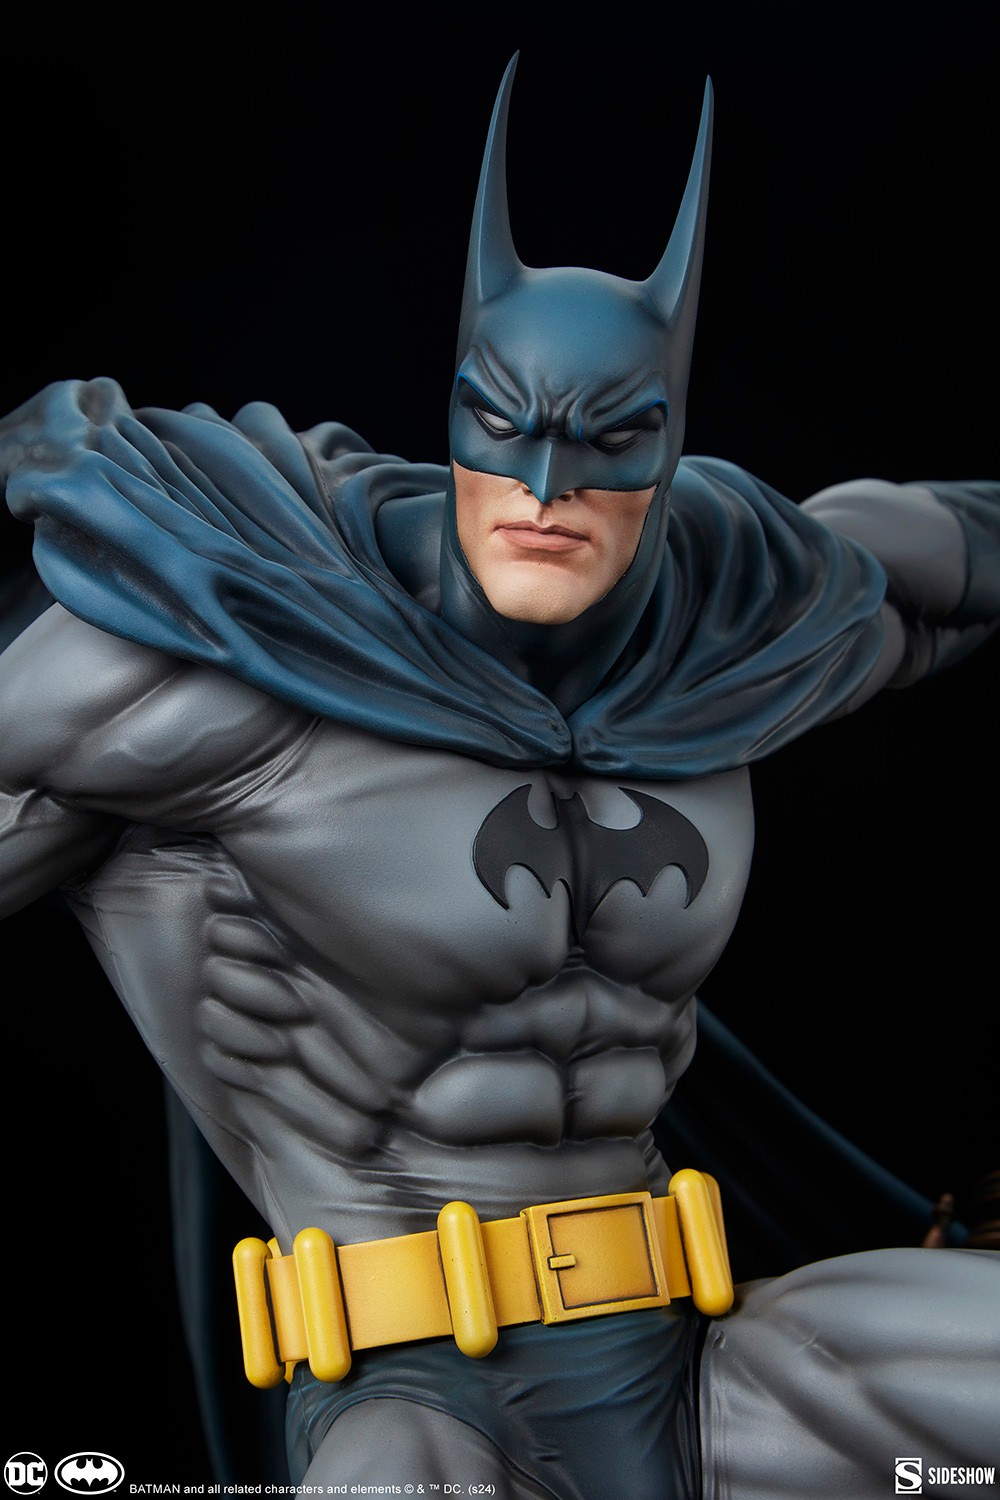 BATMAN PREMIUM FORMAT Batman-premium-format-figure_dc-comics_gallery_6605bc9dbd82d